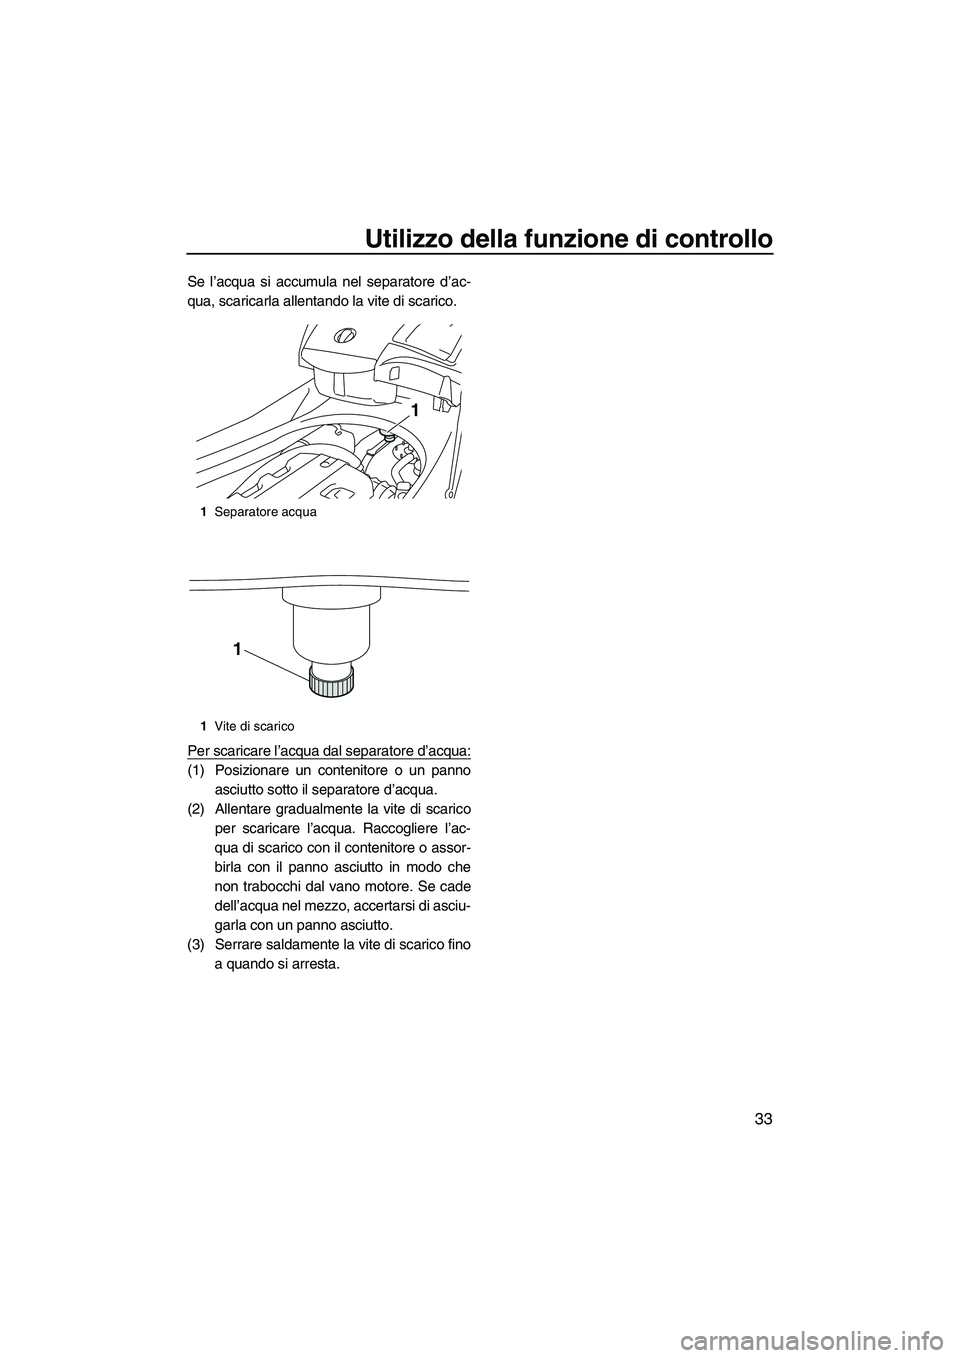 YAMAHA FX HO CRUISER 2010  Manuale duso (in Italian) Utilizzo della funzione di controllo
33
Se l’acqua si accumula nel separatore d’ac-
qua, scaricarla allentando la vite di scarico.
Per scaricare l’acqua dal separatore d’acqua:
(1) Posizionare